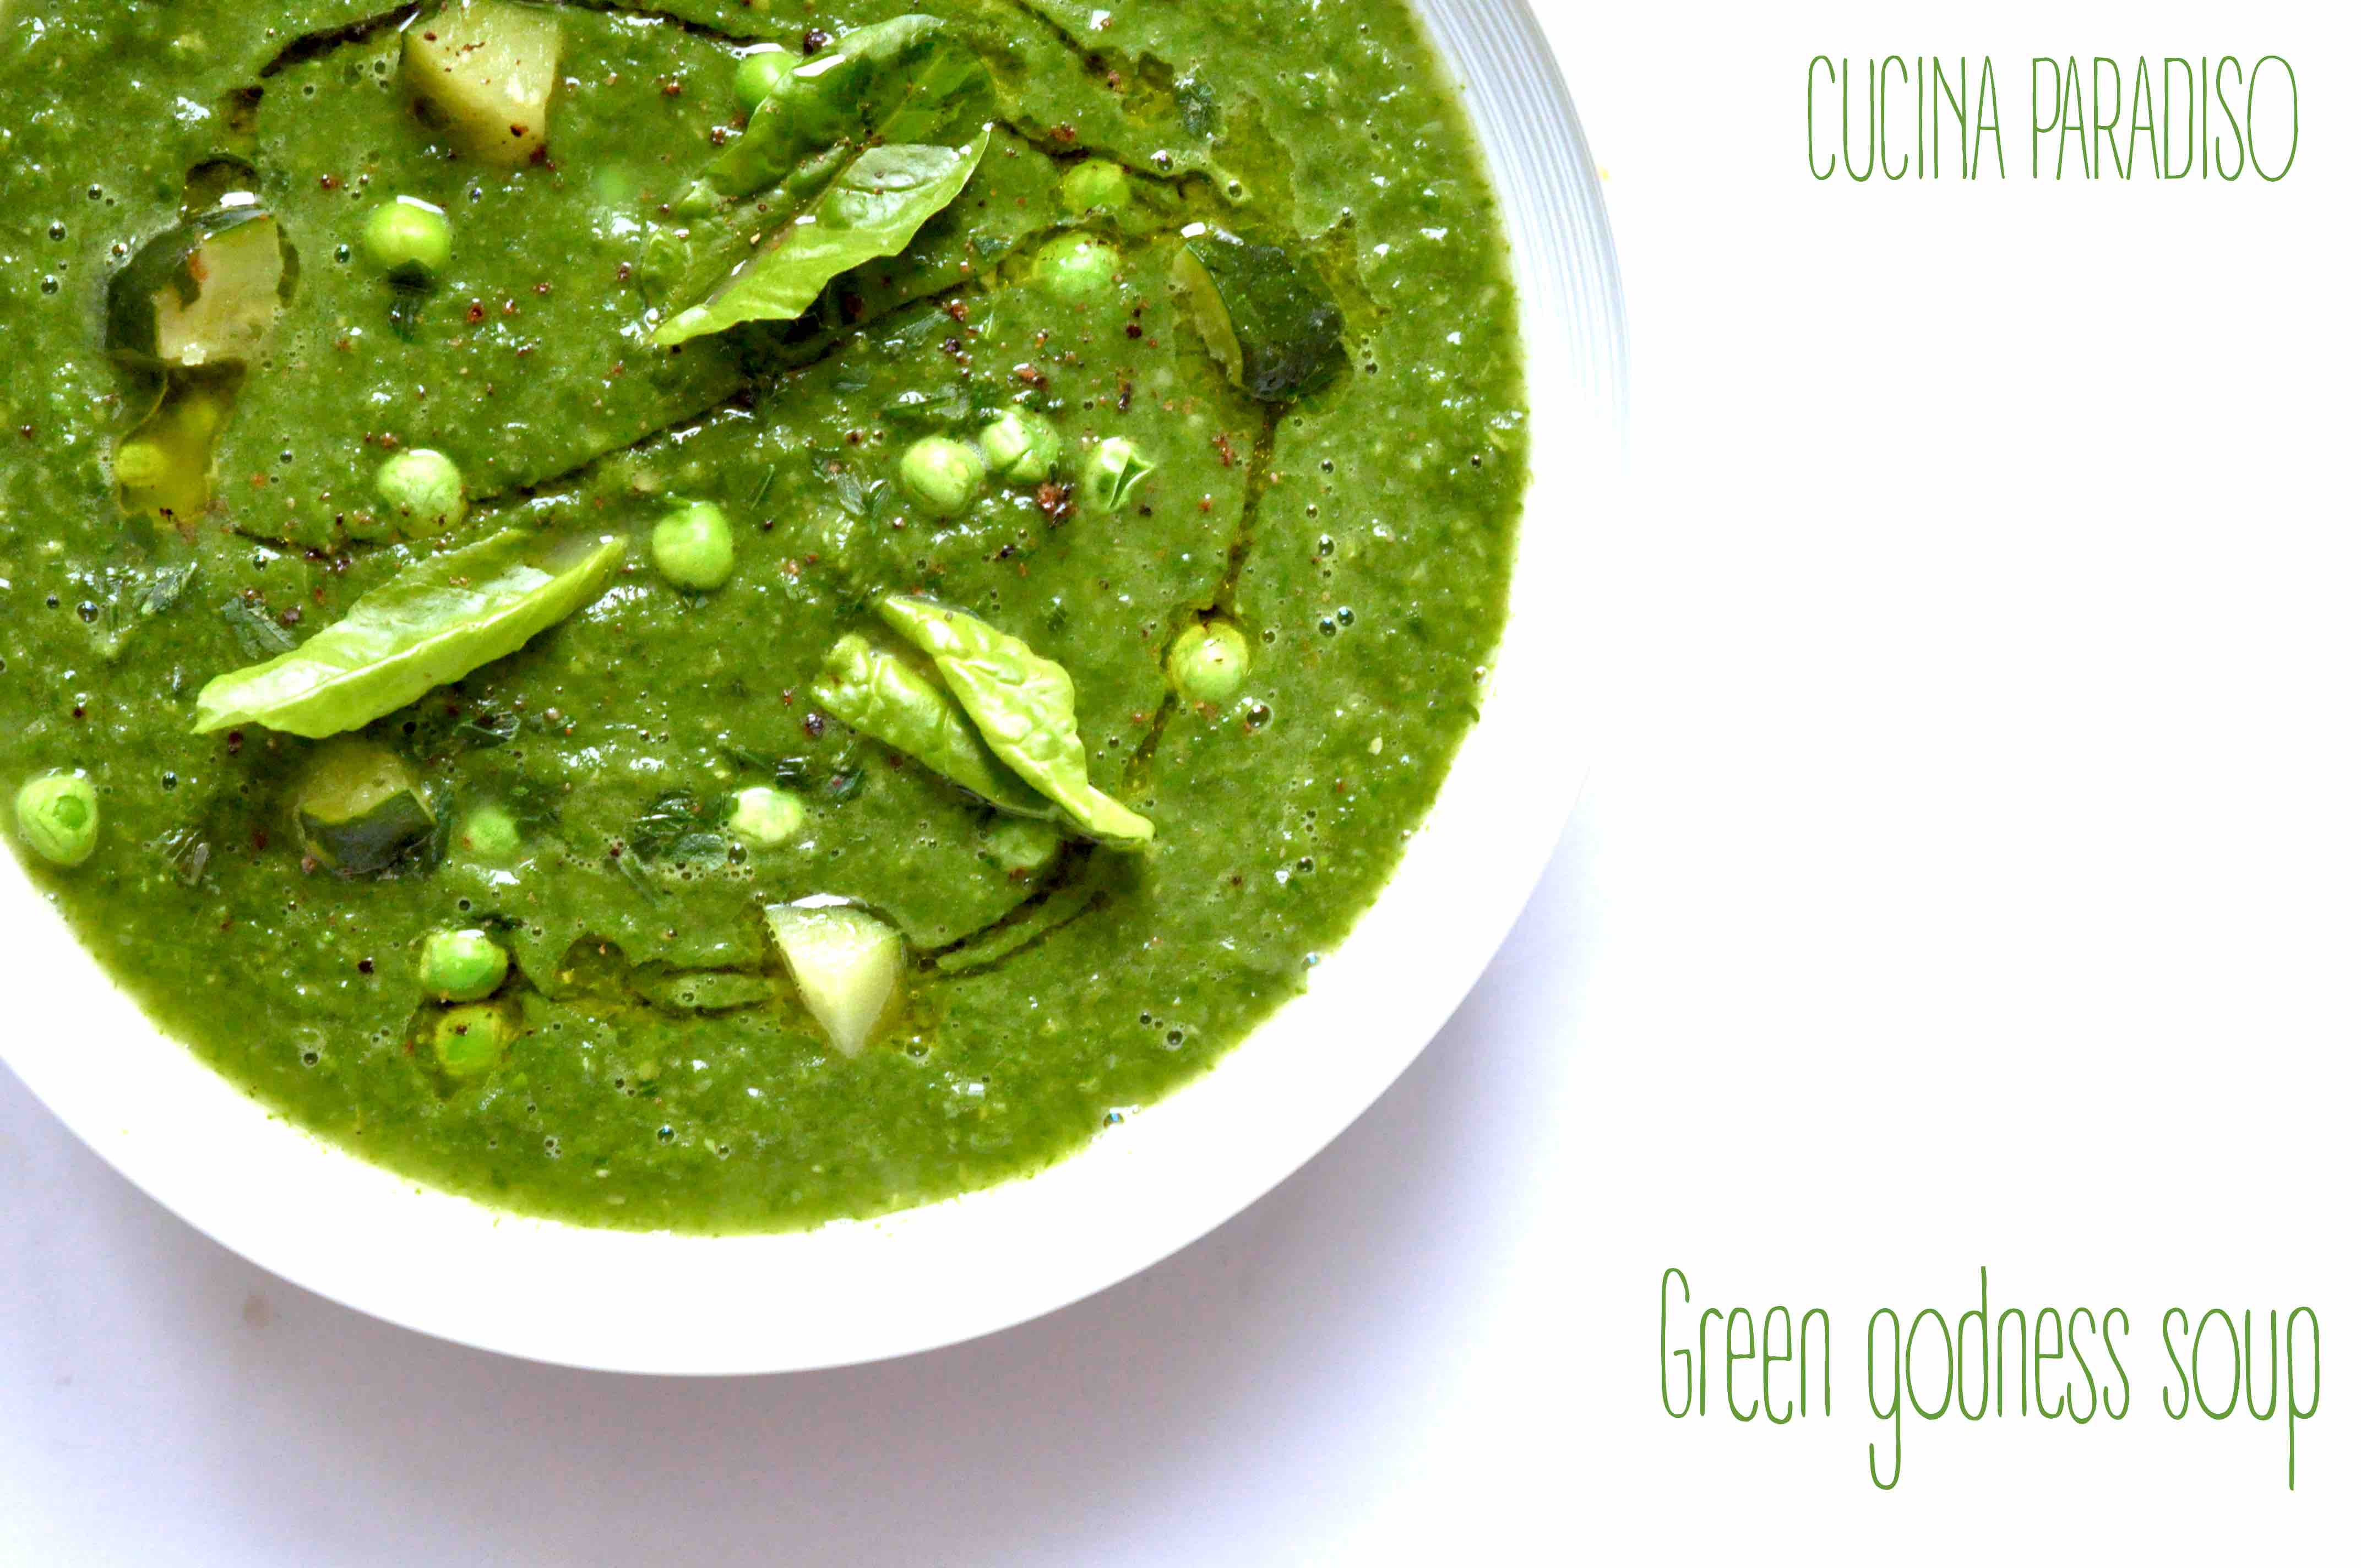 Green godness soup2